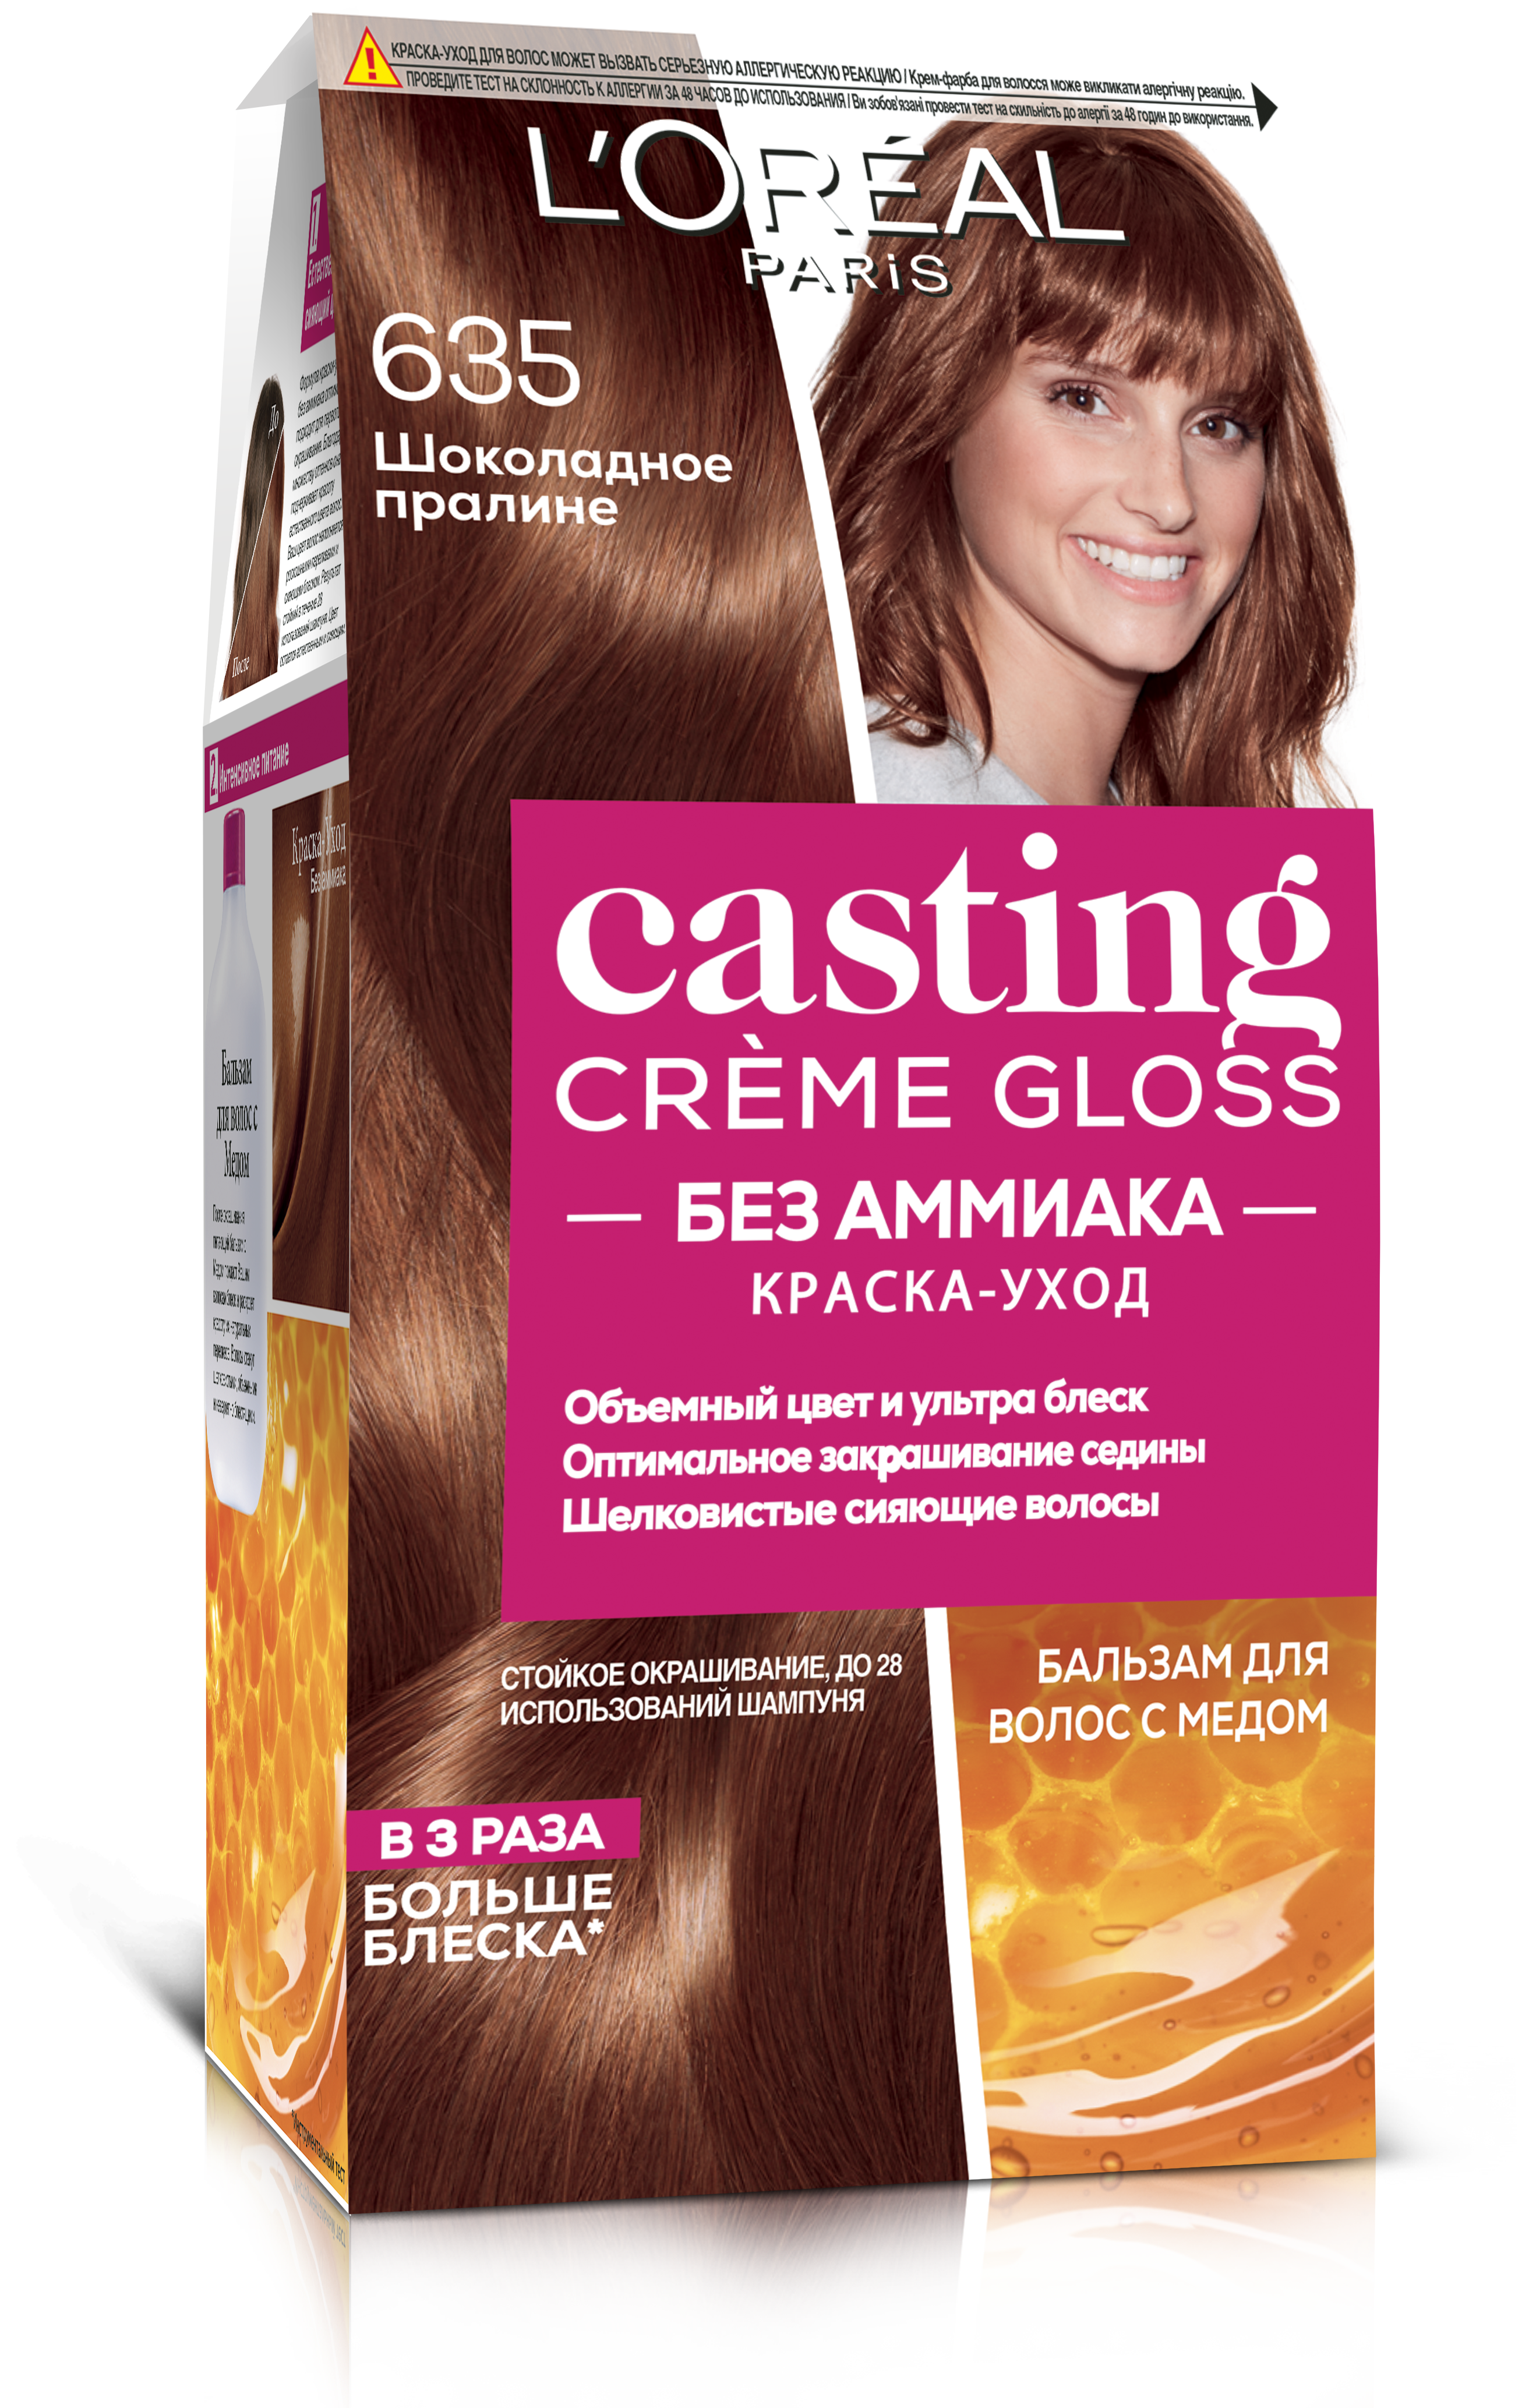 Фарба-догляд для волосся без аміаку L'Oreal Paris Casting Creme Gloss, відтінок 635 (Шоколадне праліне), 120 мл (A8493076) - фото 1